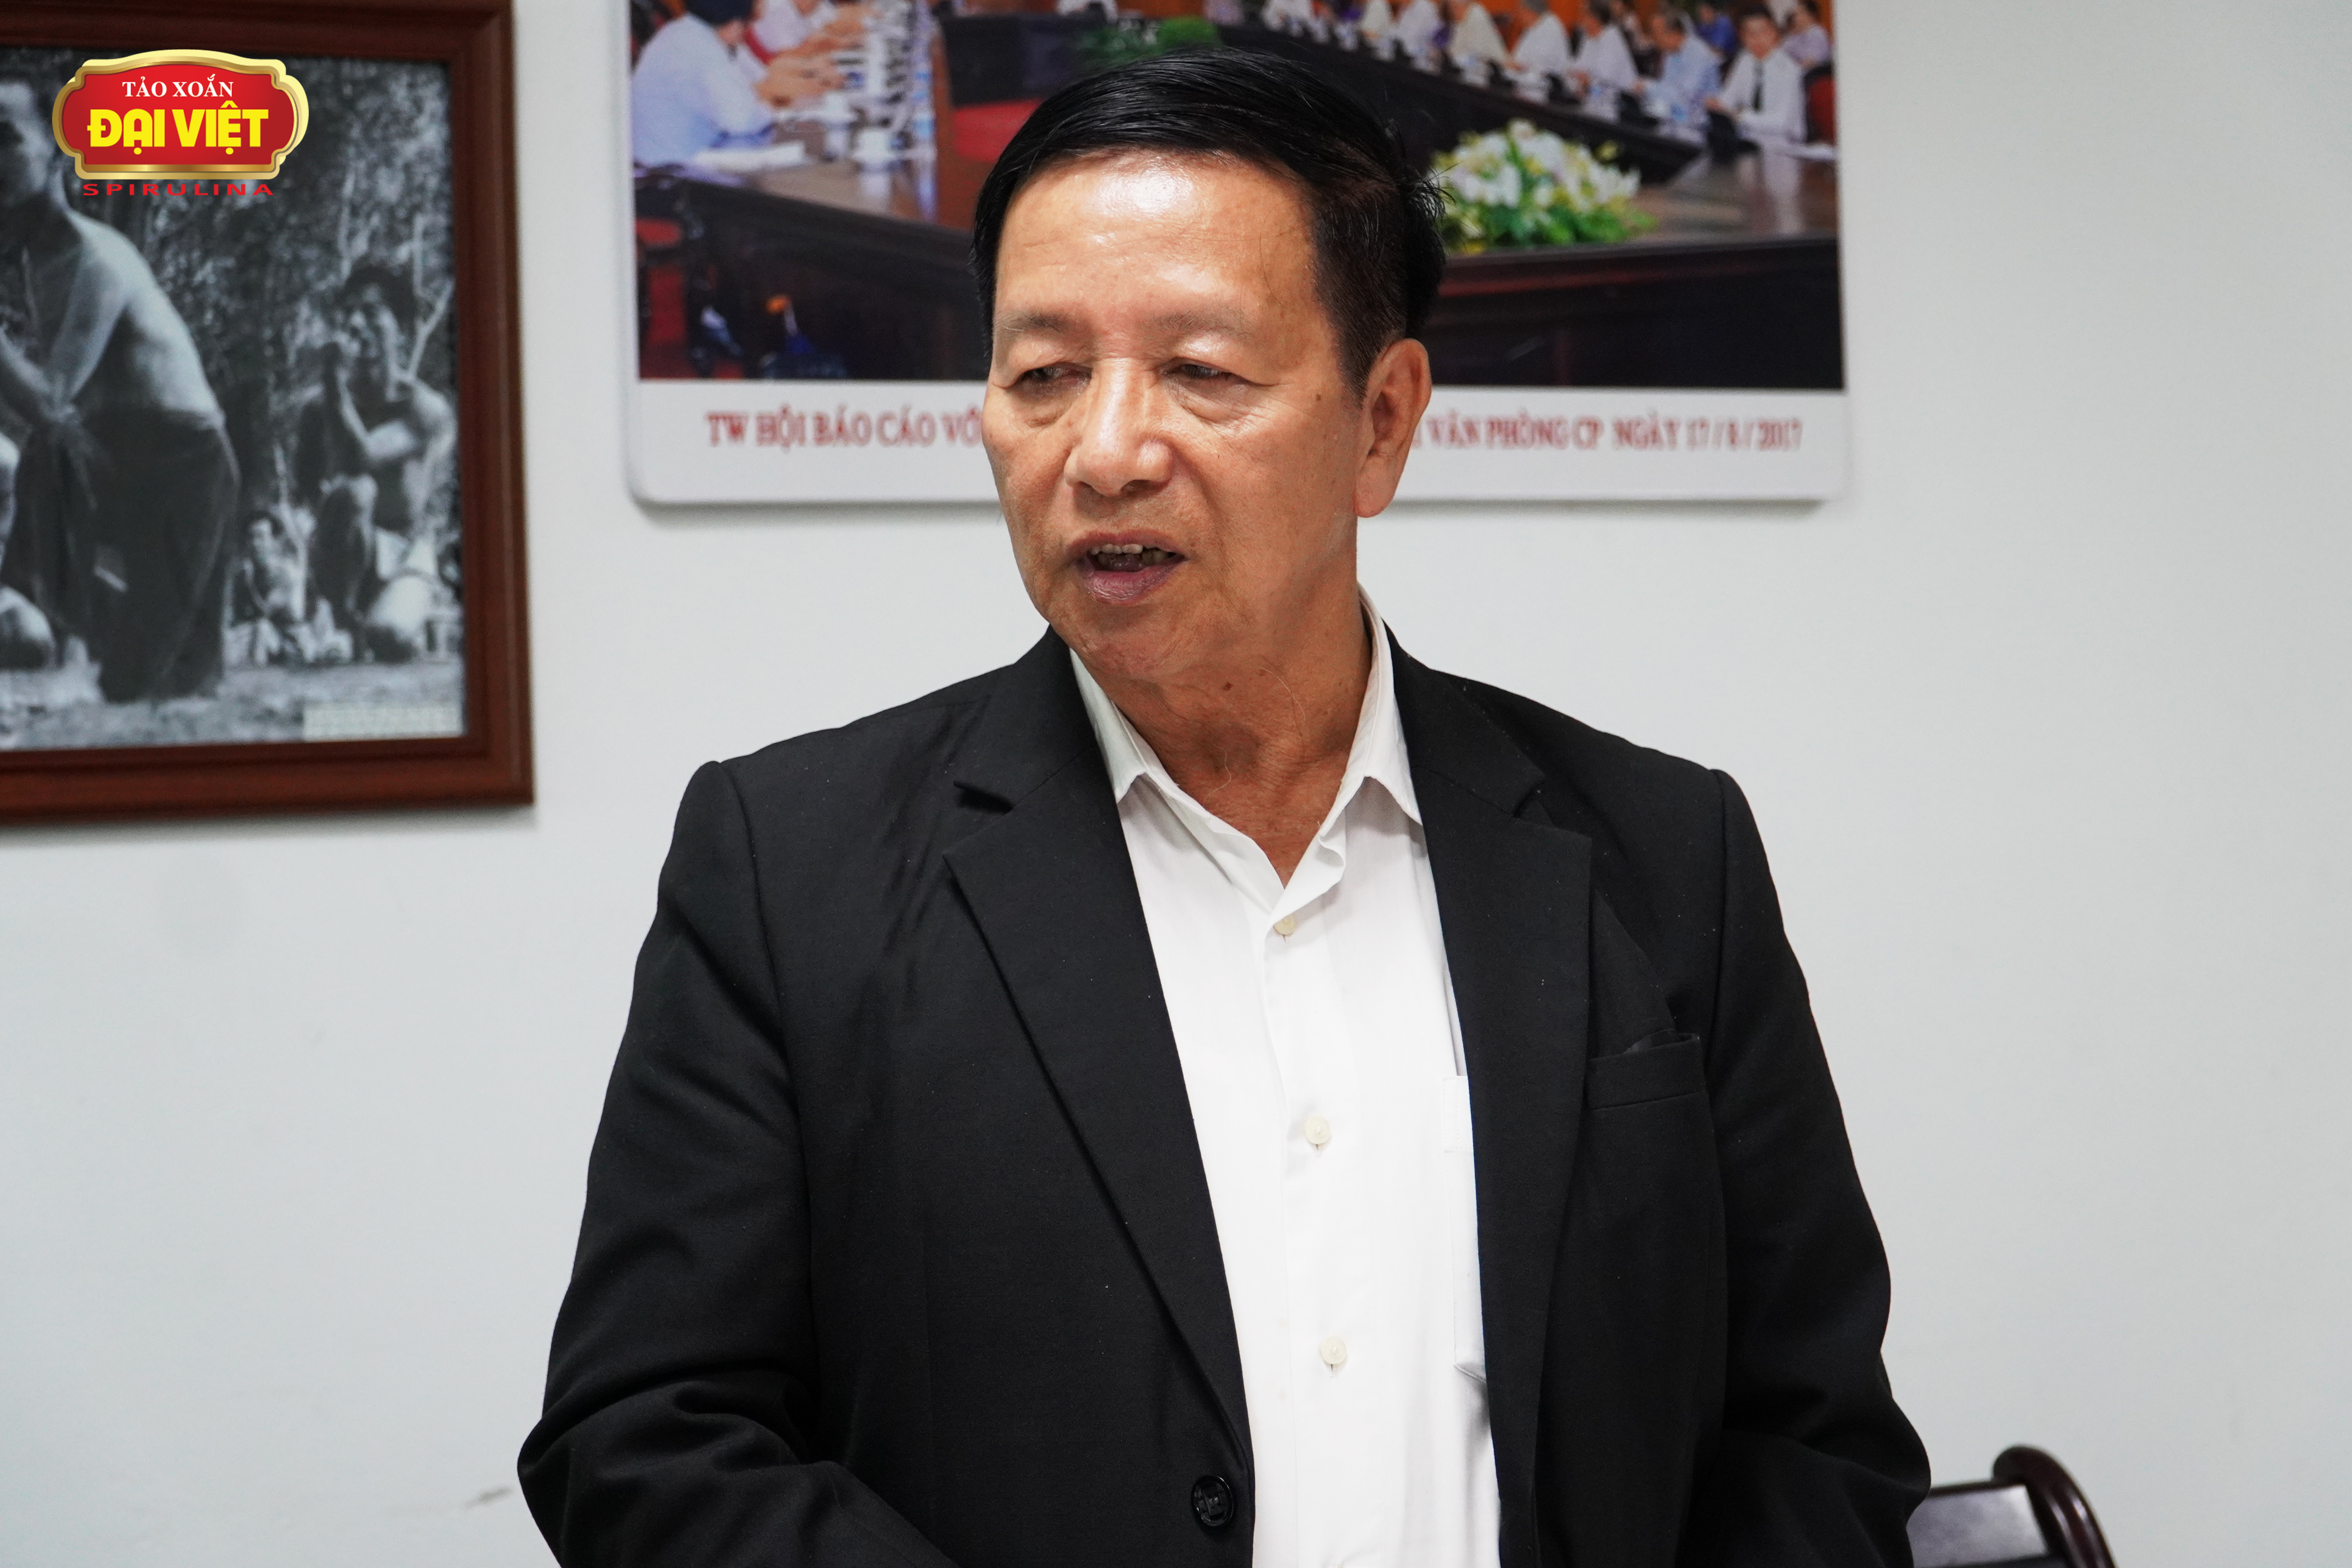 PGS.TS Phạm Ngọc Khái trình bày những đánh giá về công trình nghiên cứu của Tảo xoắn Đại Việt